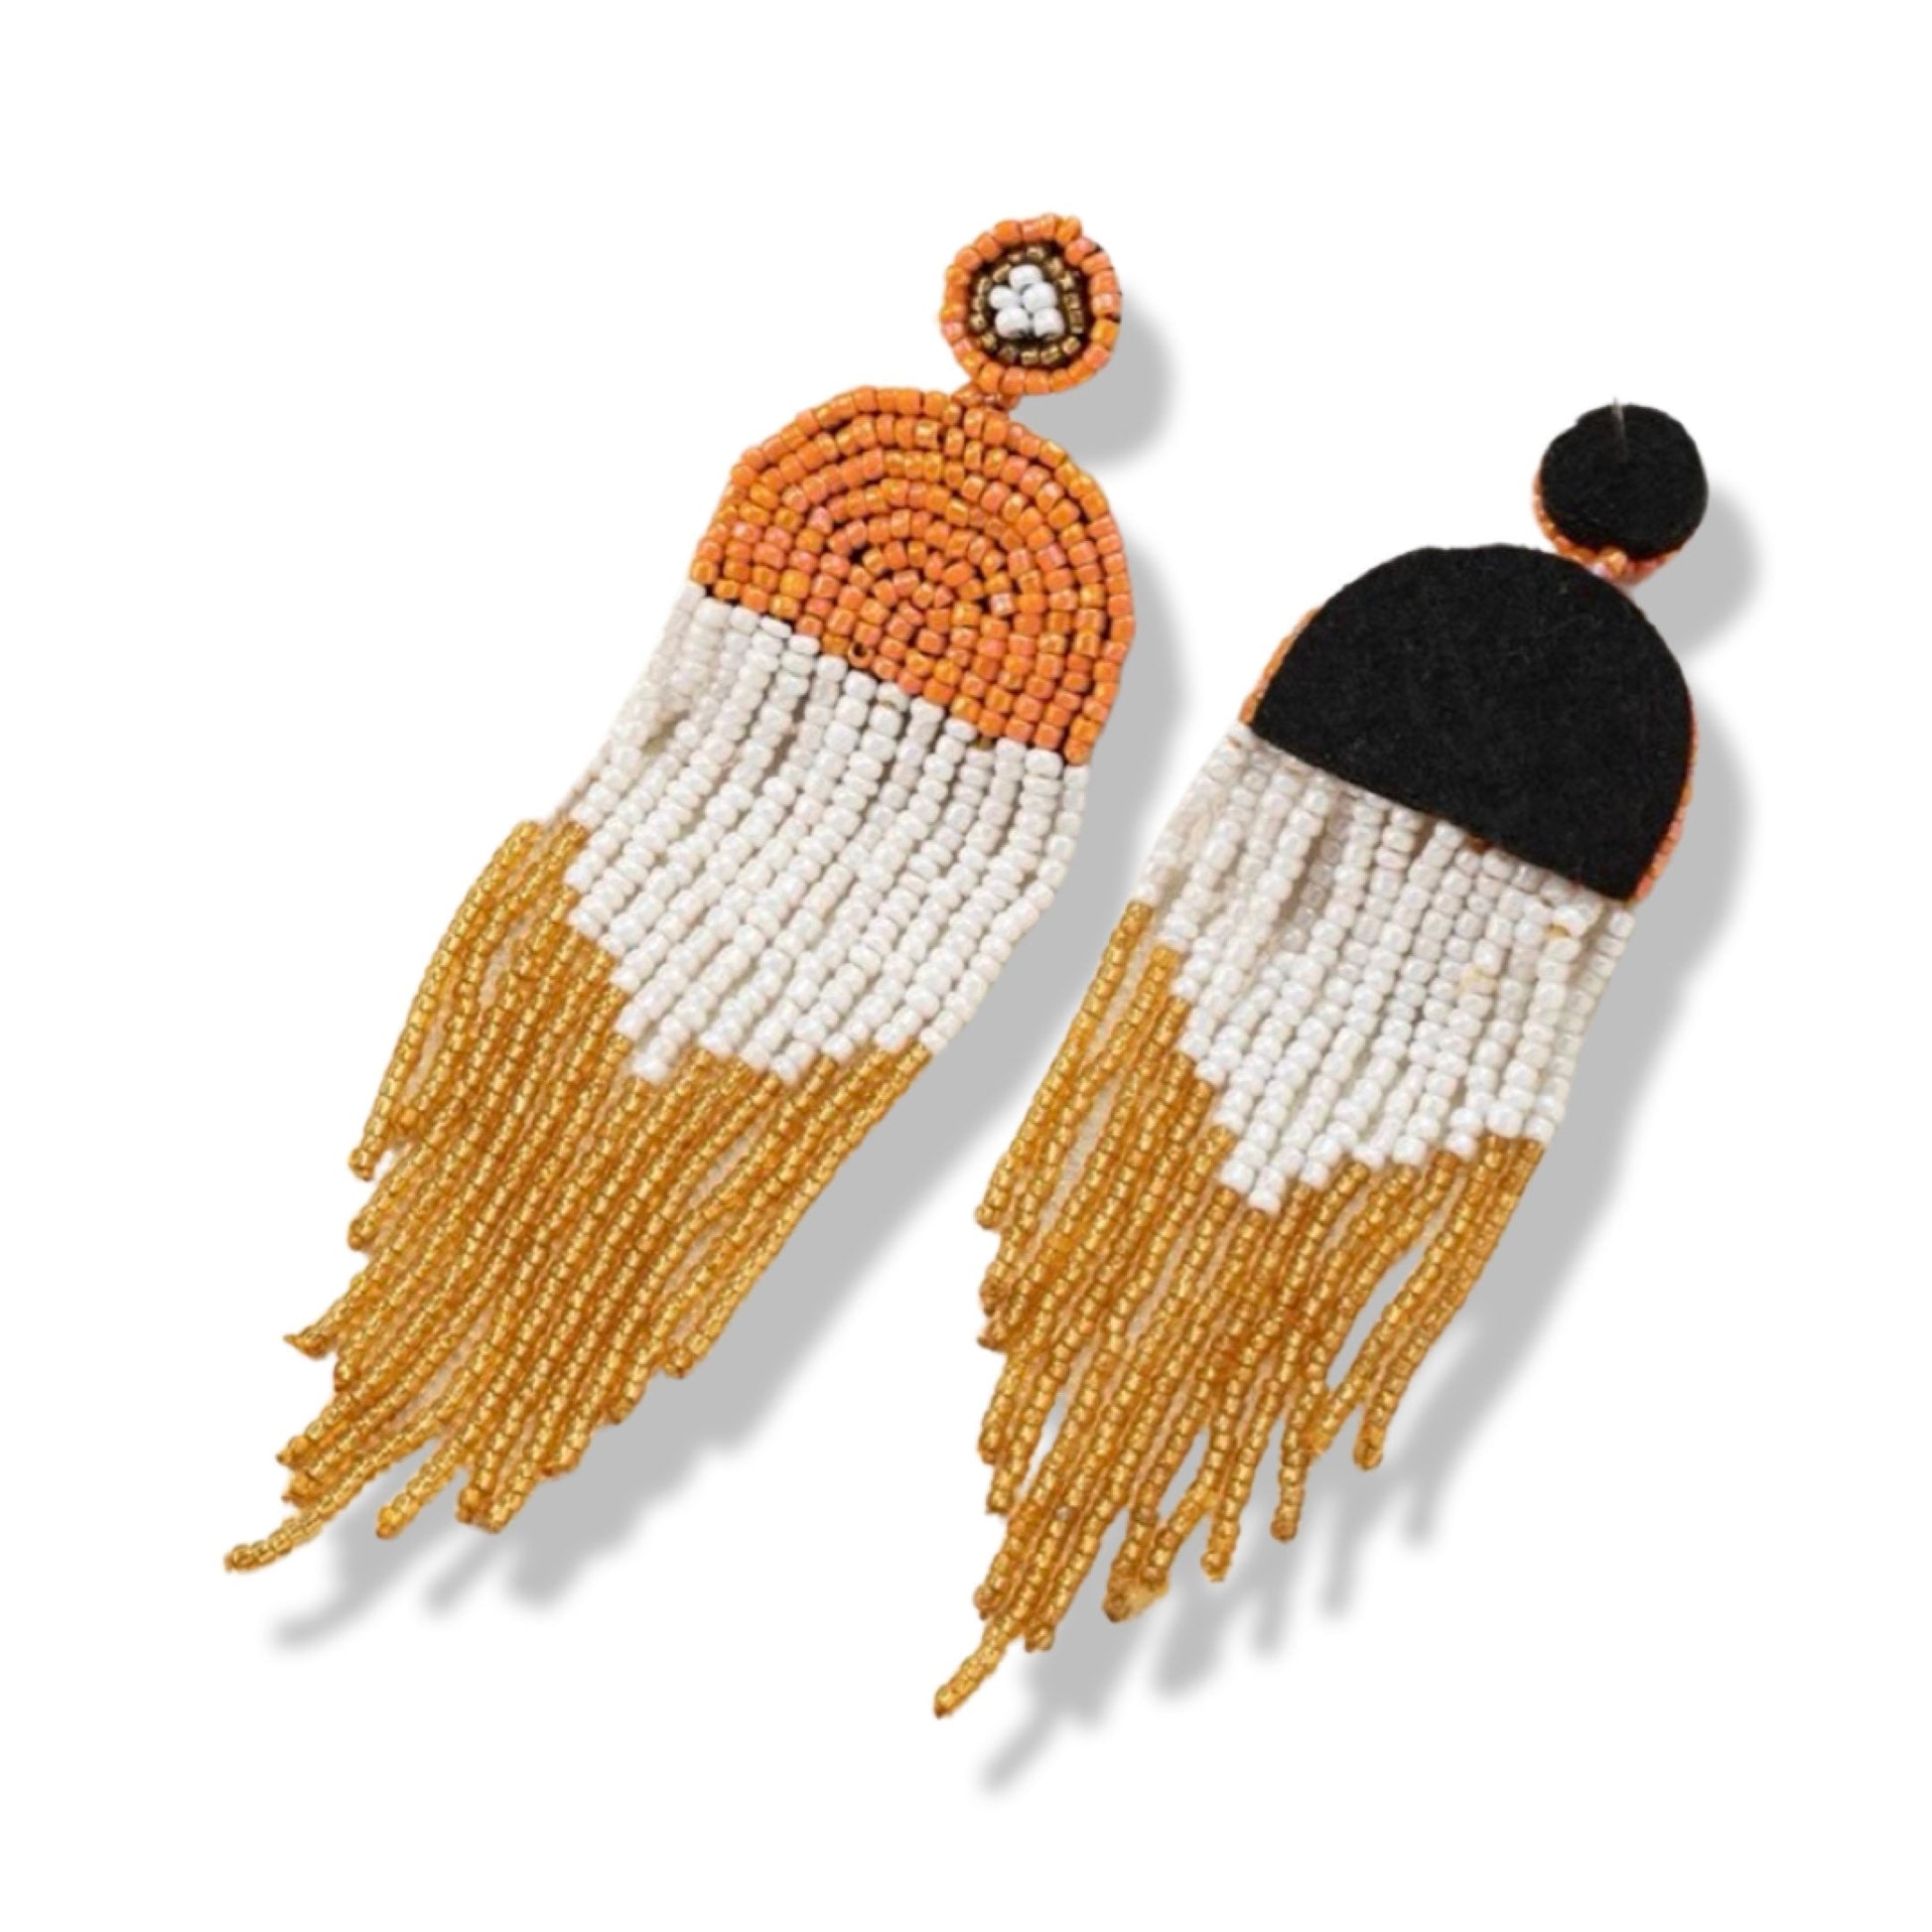 Autumn Beaded Boho Earrings - Handmade Earrings, Bohemian Earrings, Beaded Earrings, Handmade Jewelry, Fall Colors, Orange Earrings